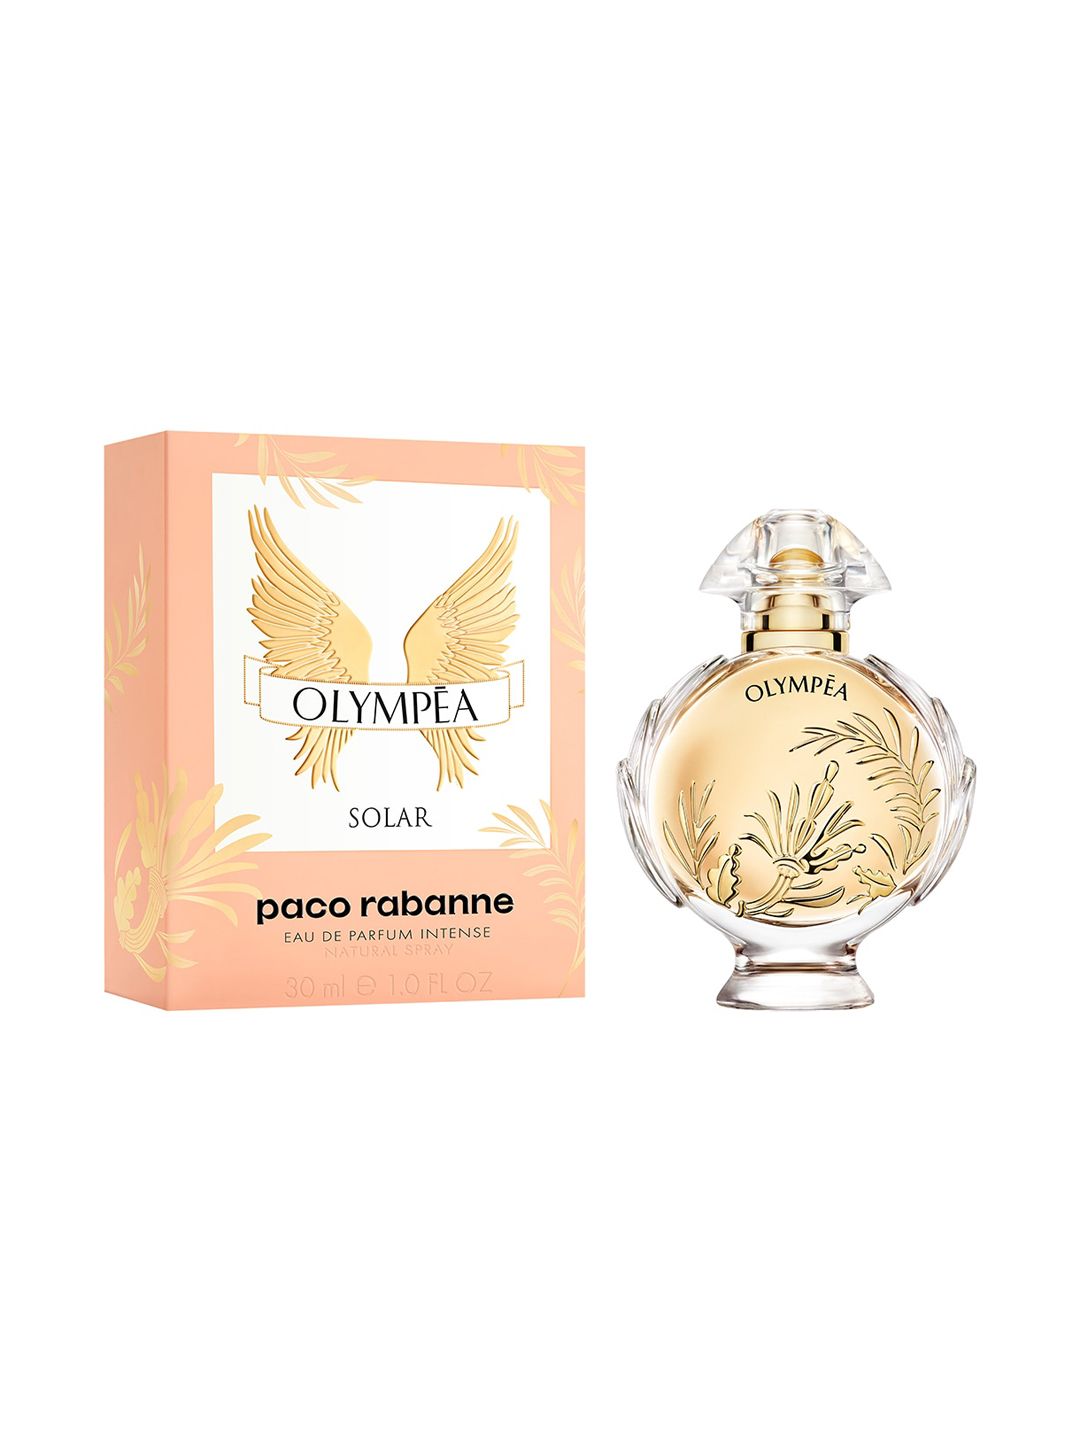 Paco Rabanne Olympea Solar Eau de Parfum 30 ml Price in India